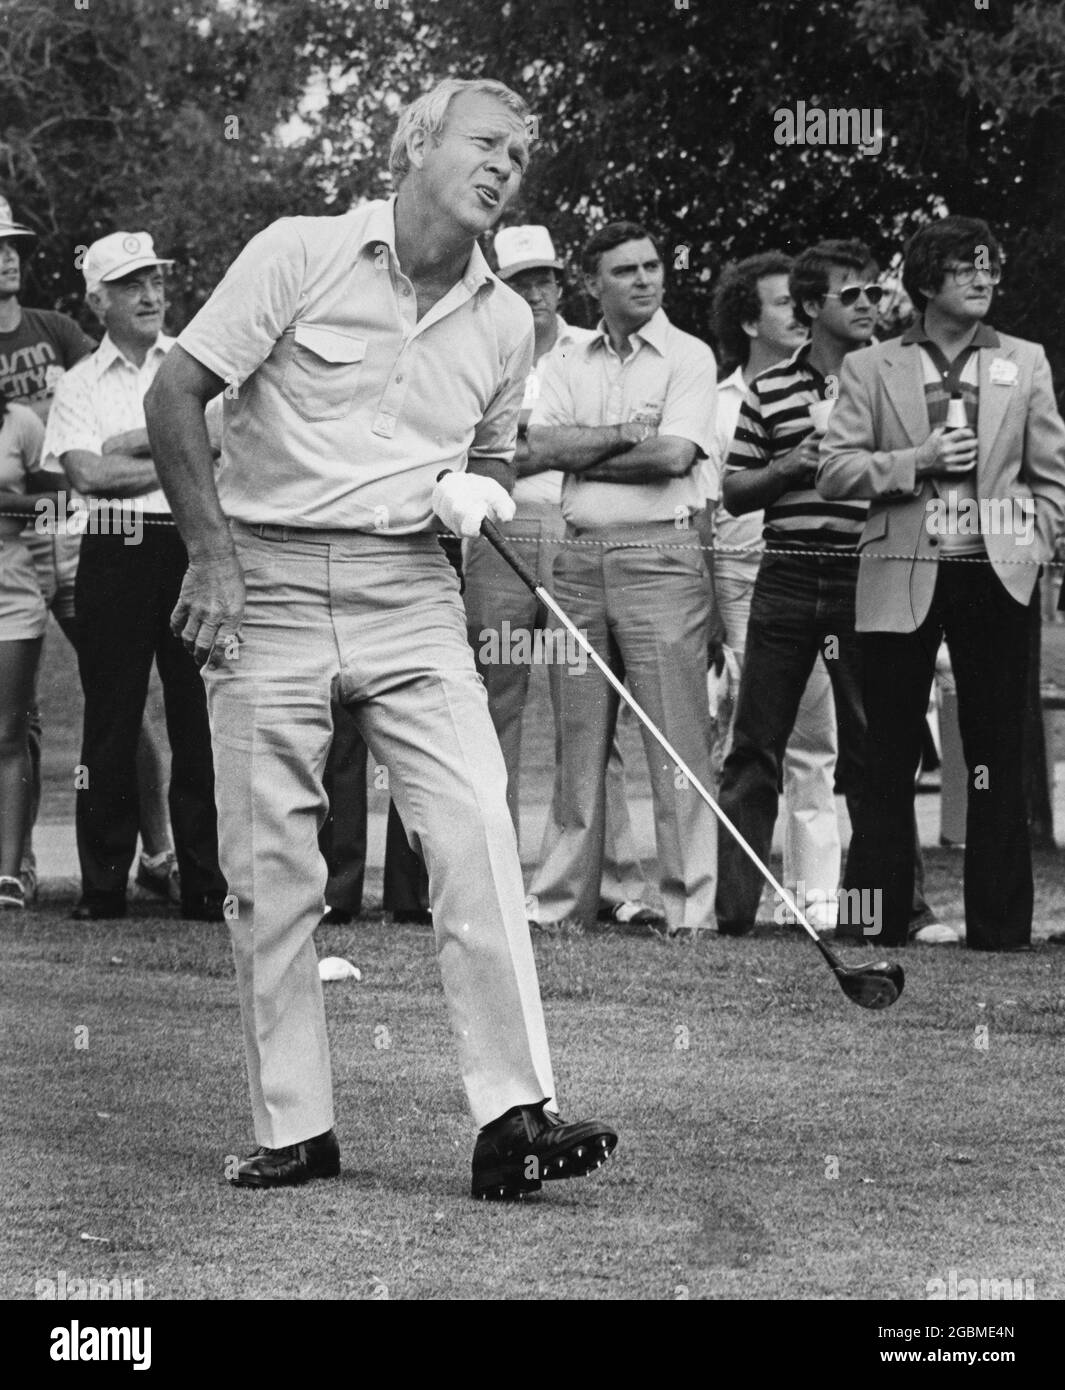 Austin Texas USA,1986: Le golfeur professionnel Arnold Palmer en compétition dans le tournoi Legends of Golf pour les joueurs de 50 ans et plus au Onion Creek Country Club. ©Bob Daemmrich Banque D'Images